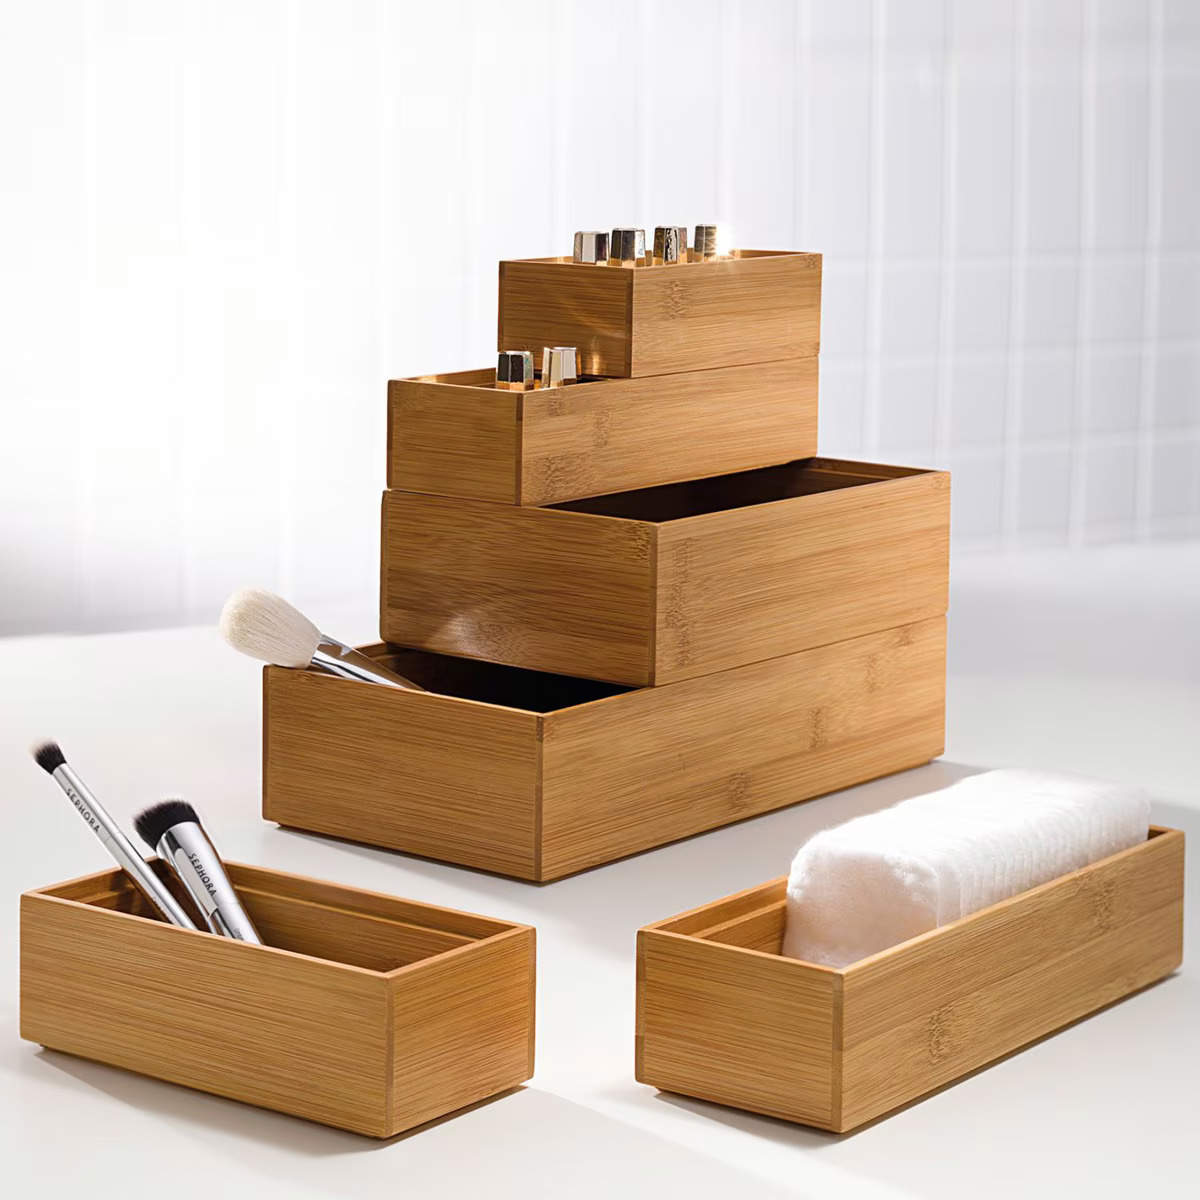 Set de cajas de madera de bambú.